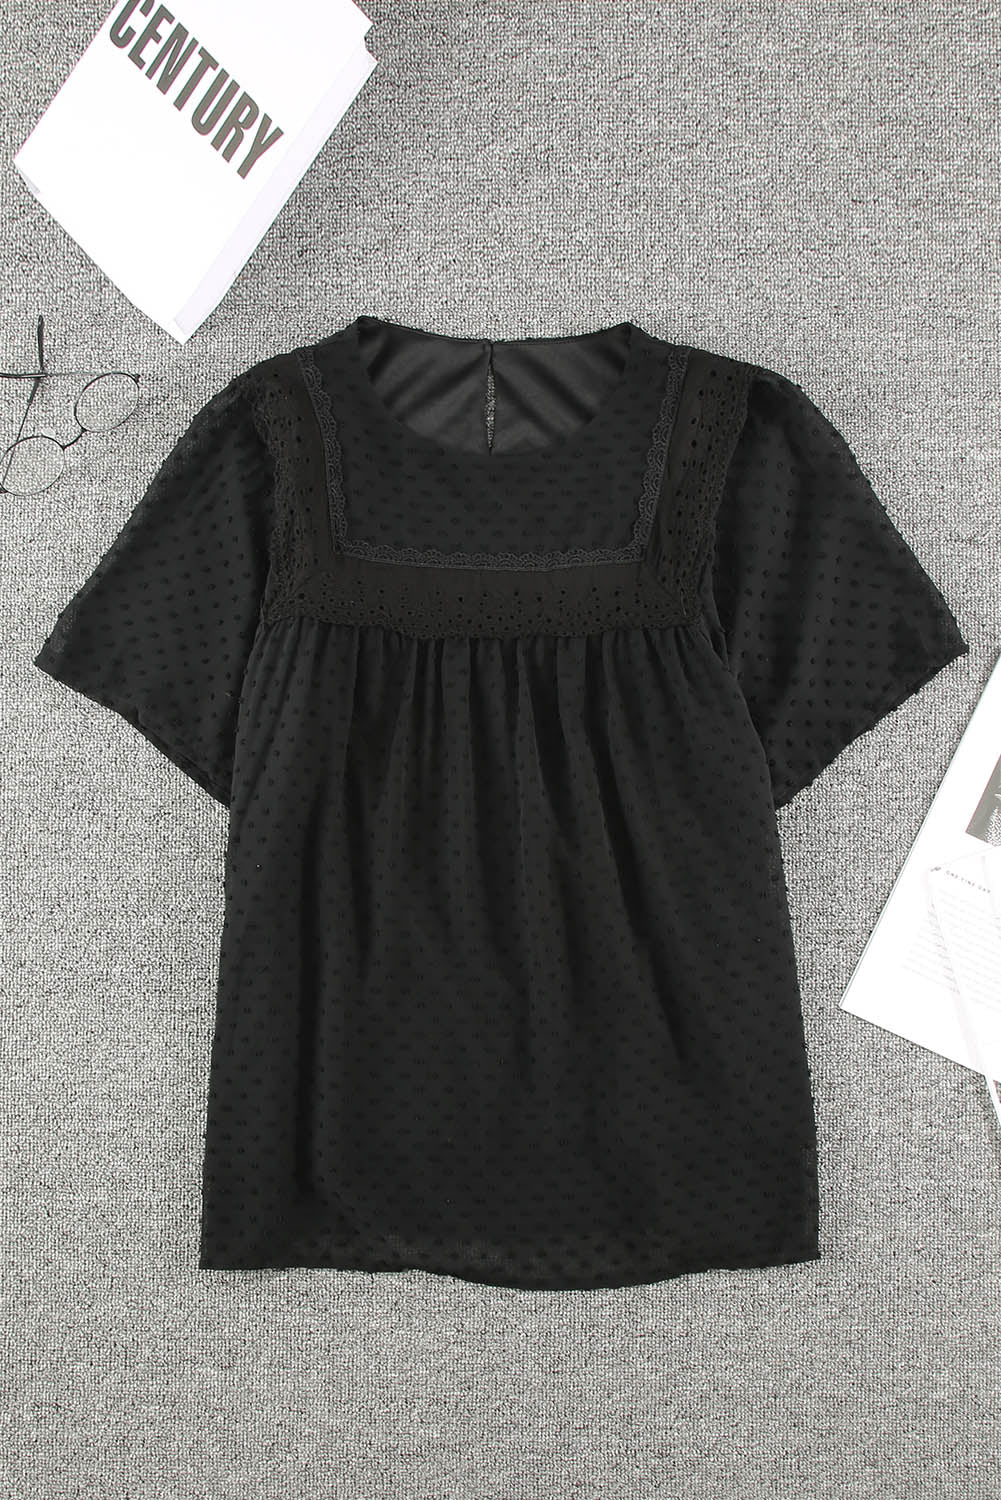 Schwarzes, transparentes, strukturiertes Babydoll-Oberteil mit Flatterärmeln